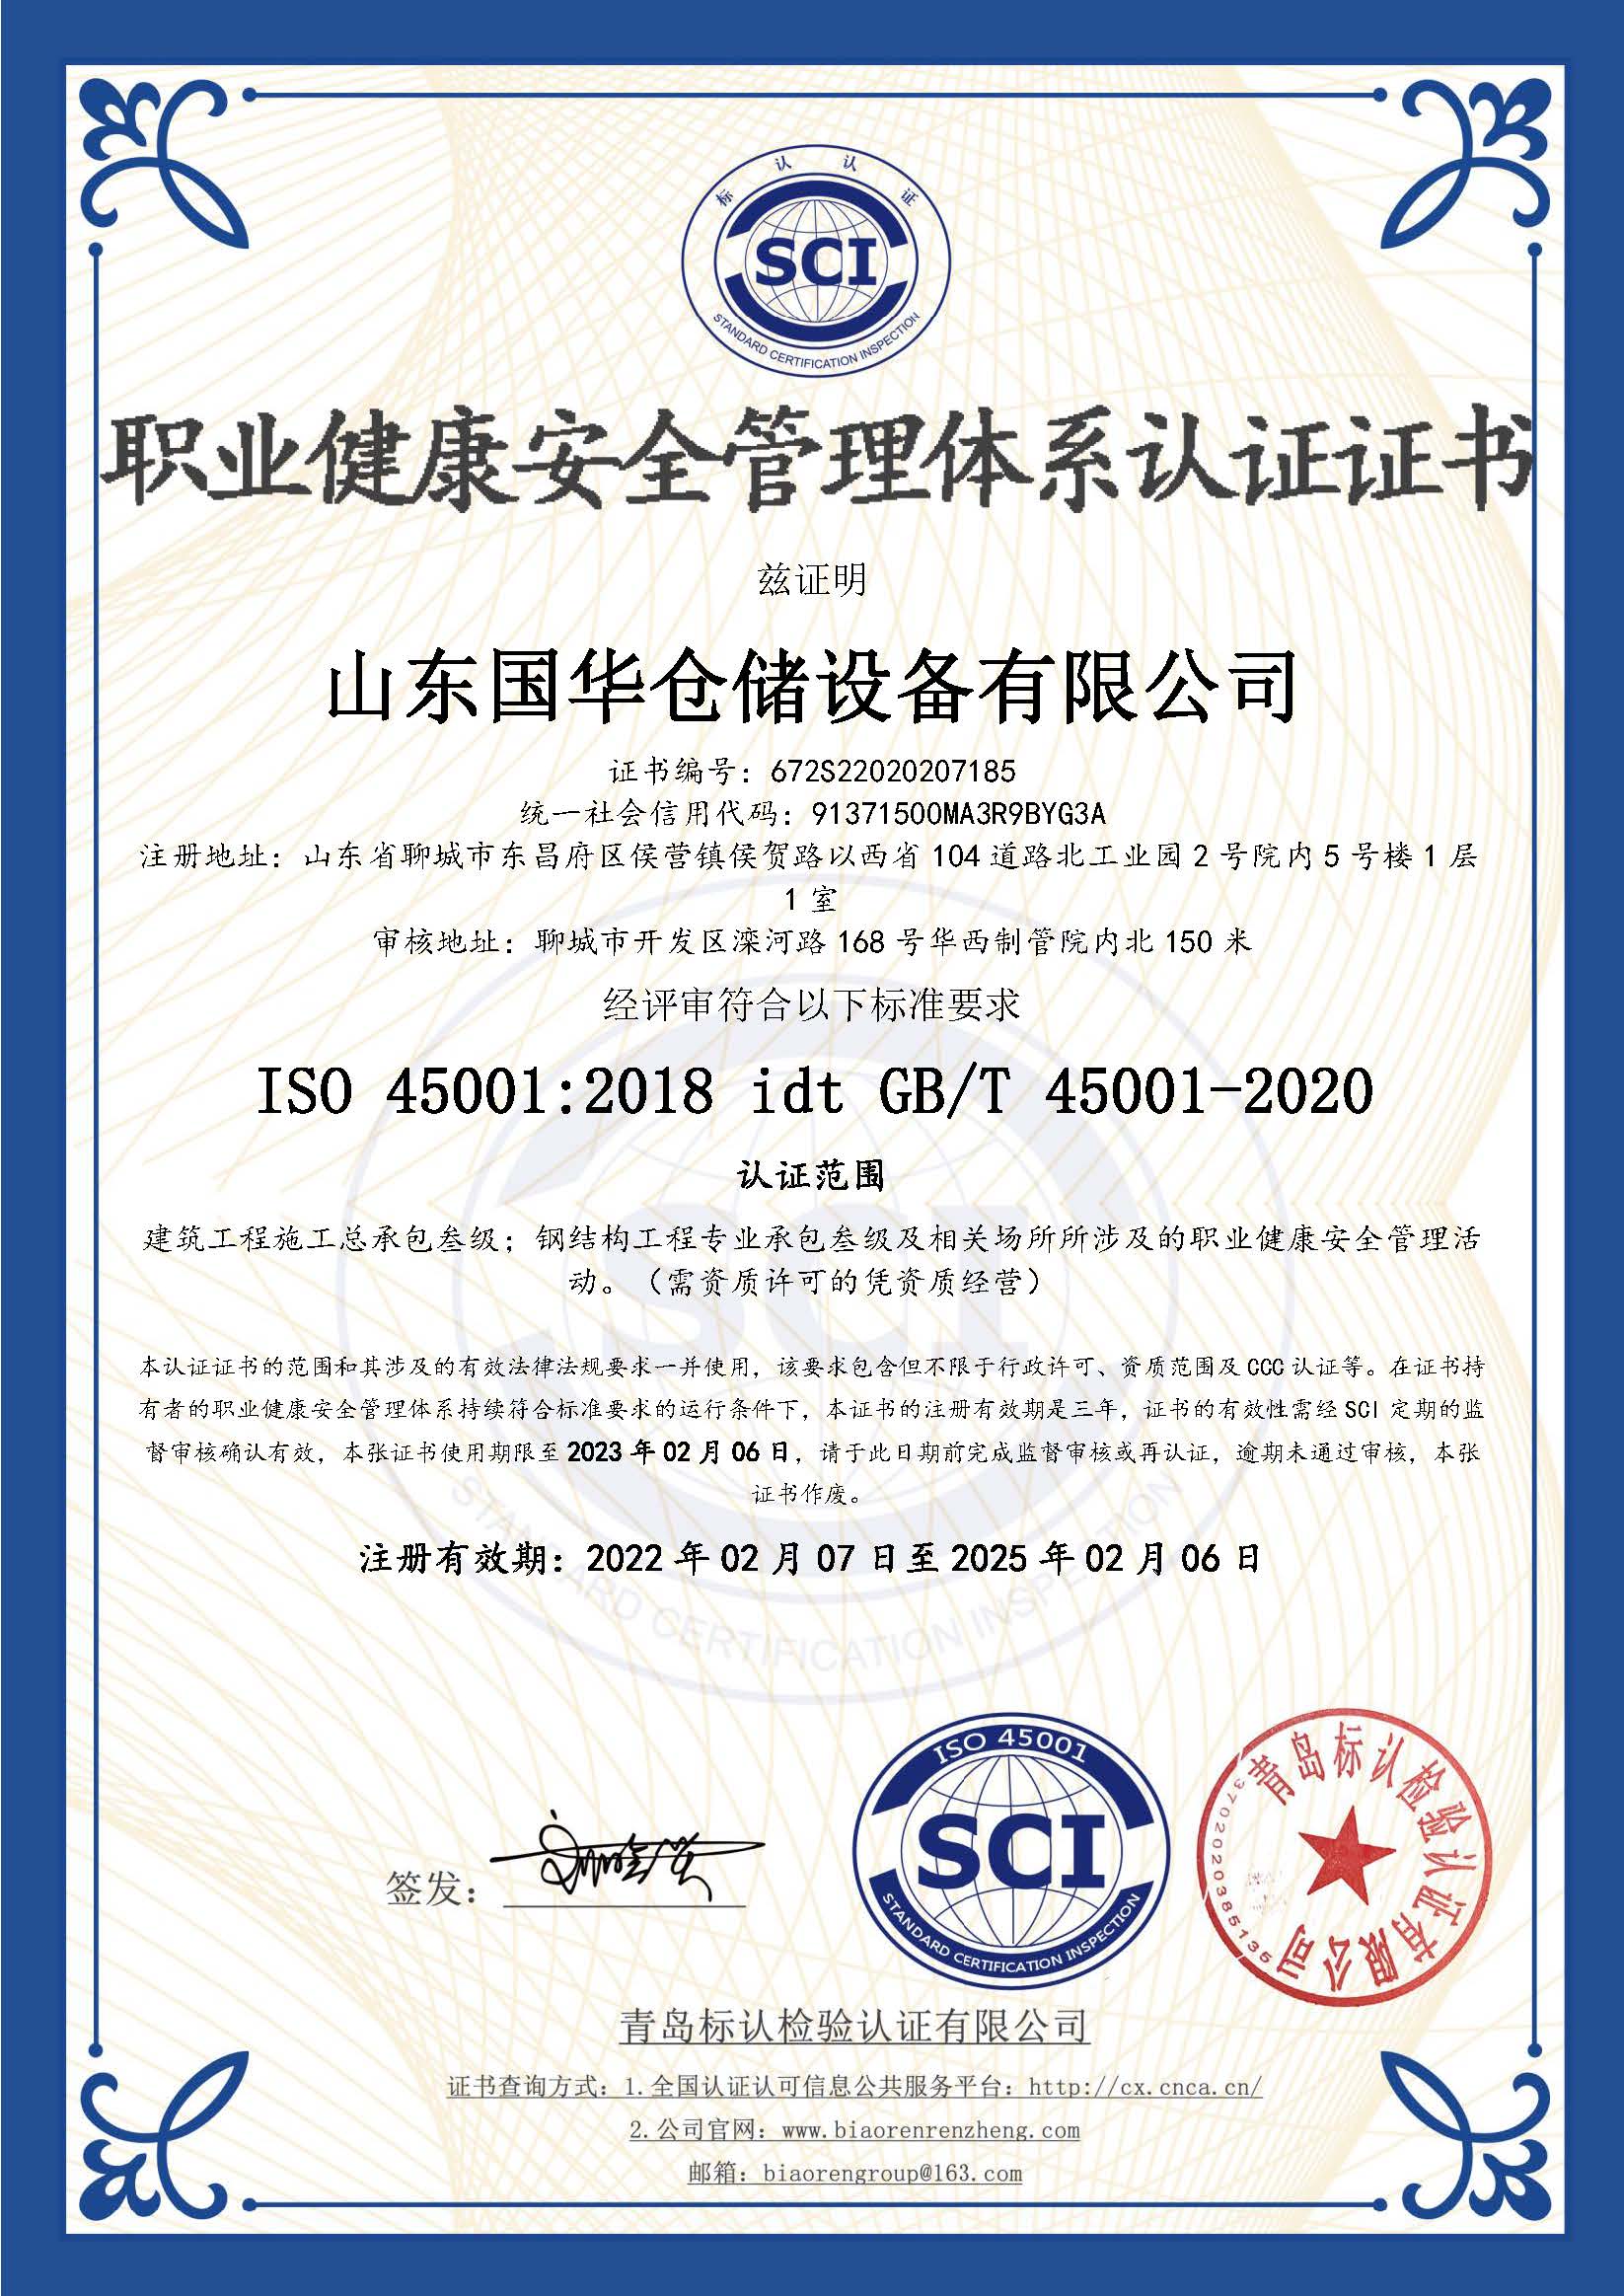 扬州钢板仓职业健康安全管理体系认证证书